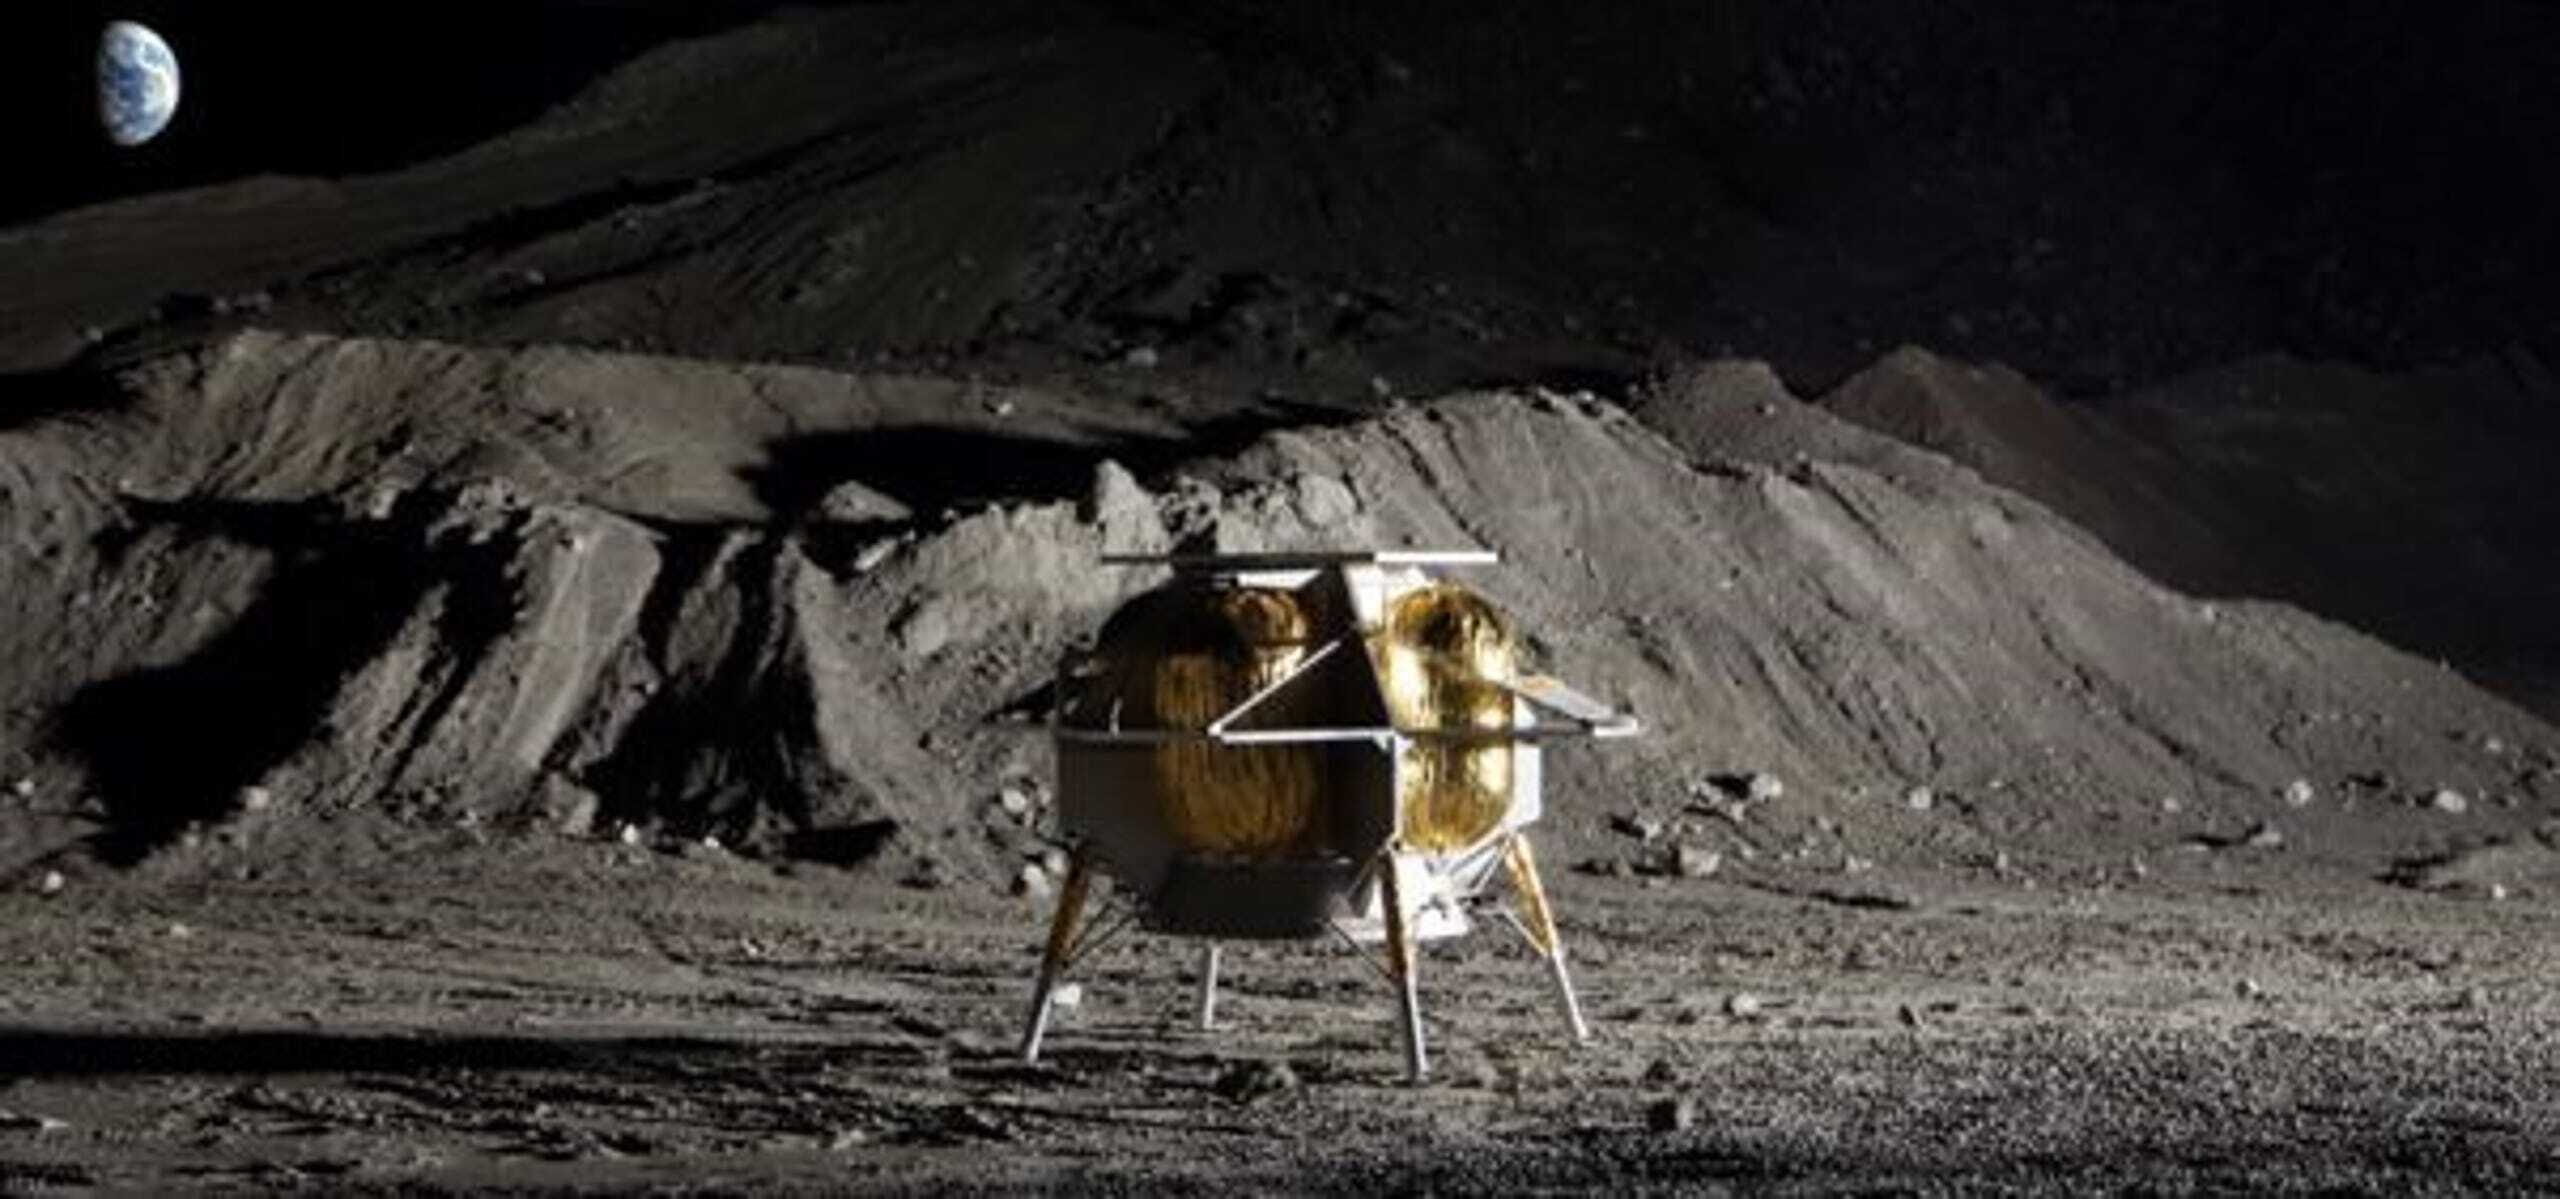 b7d70168-24d0-40ce-a0fb-e312adf28e37-astrobotic-peregrine-lunar-lander